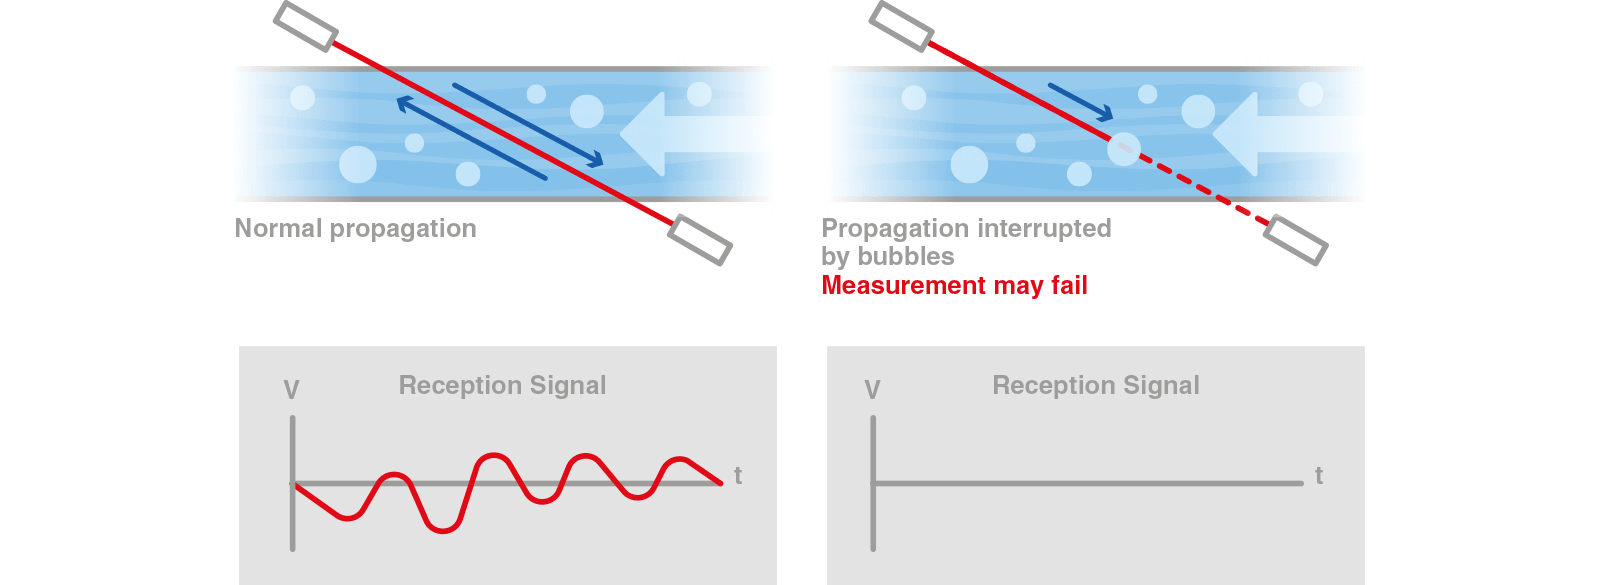 схема передовой технологии цифровой обработки сигналов